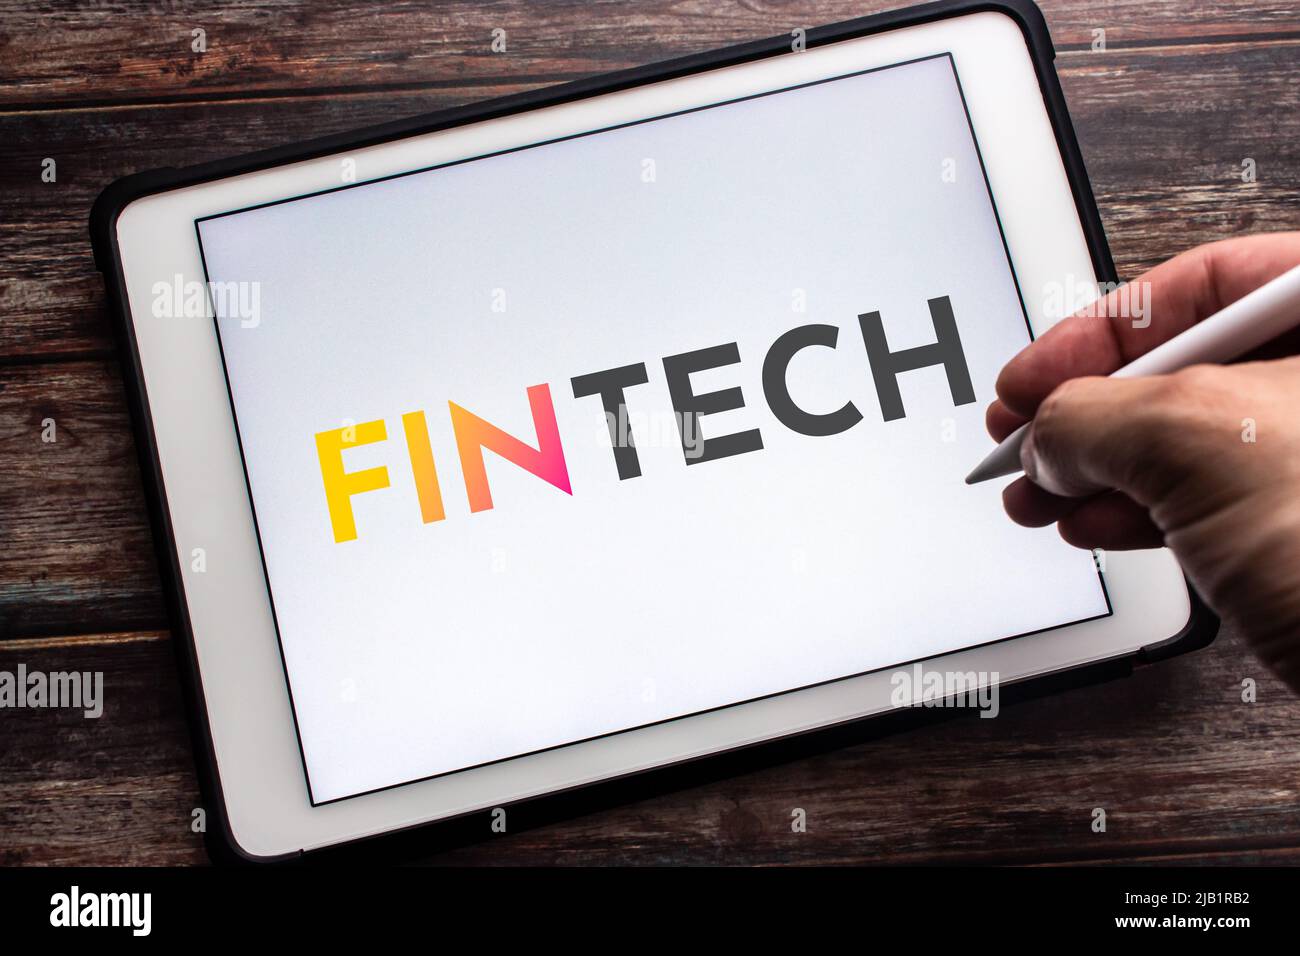 Gros plan sur le mot-clé FinTech (technologie financière) sur la tablette. Le concept de la technologie et des méthodes financières. Main tenant le stylet sans fil Banque D'Images